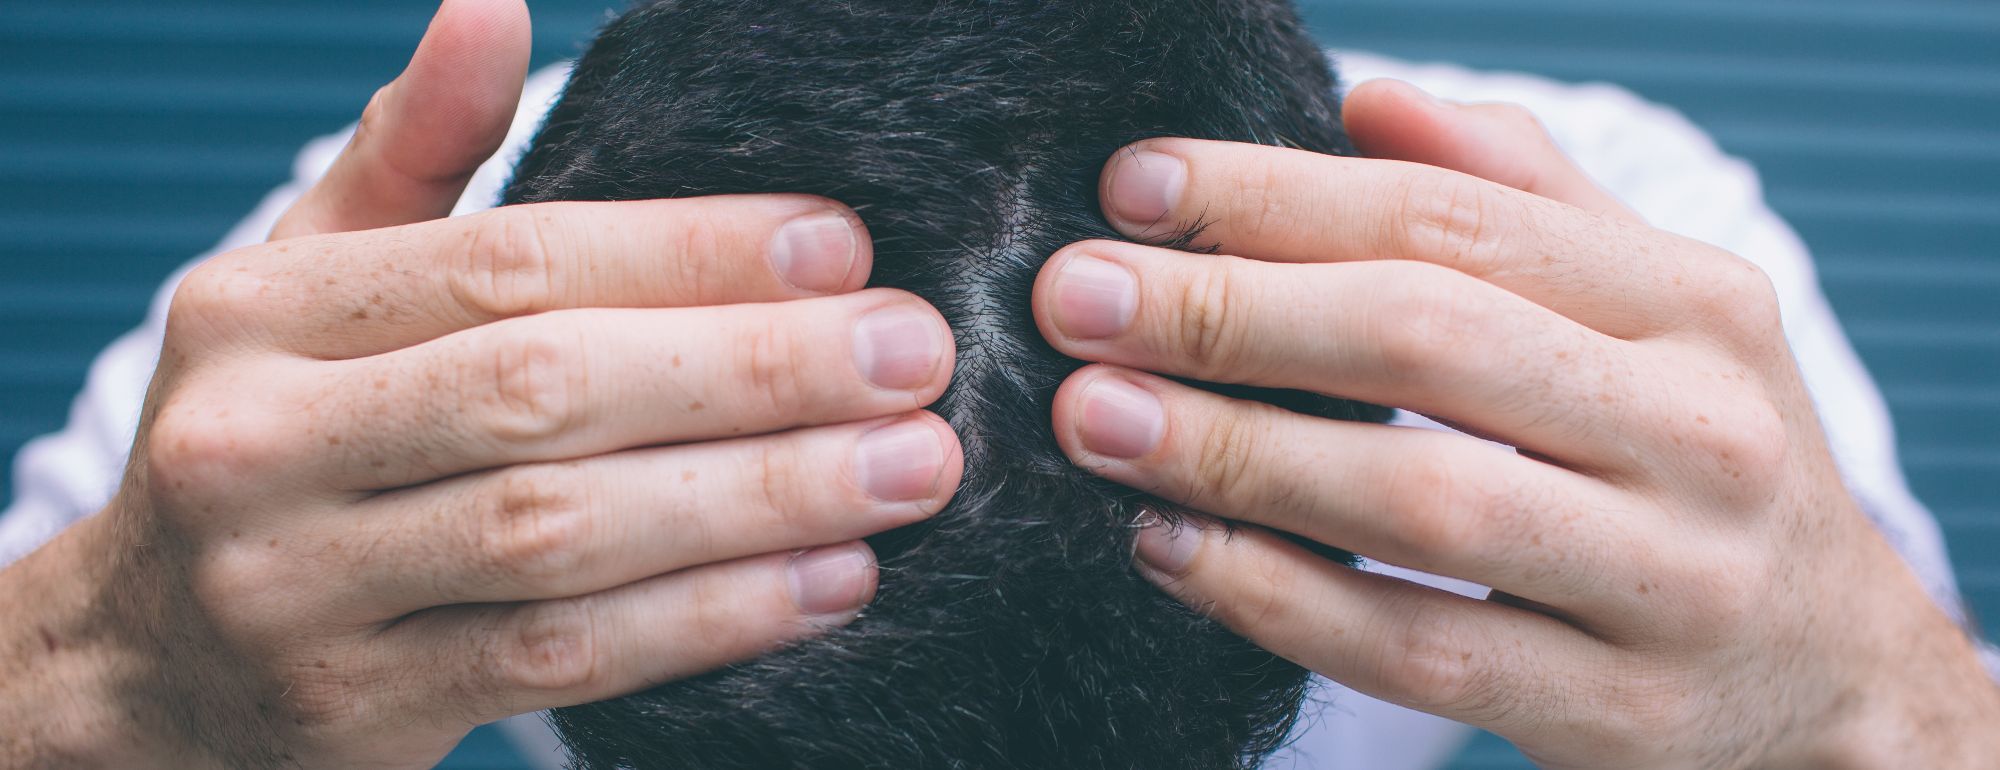 Queda de cabelo - Será o stress, a ansiedade ou a depressão?